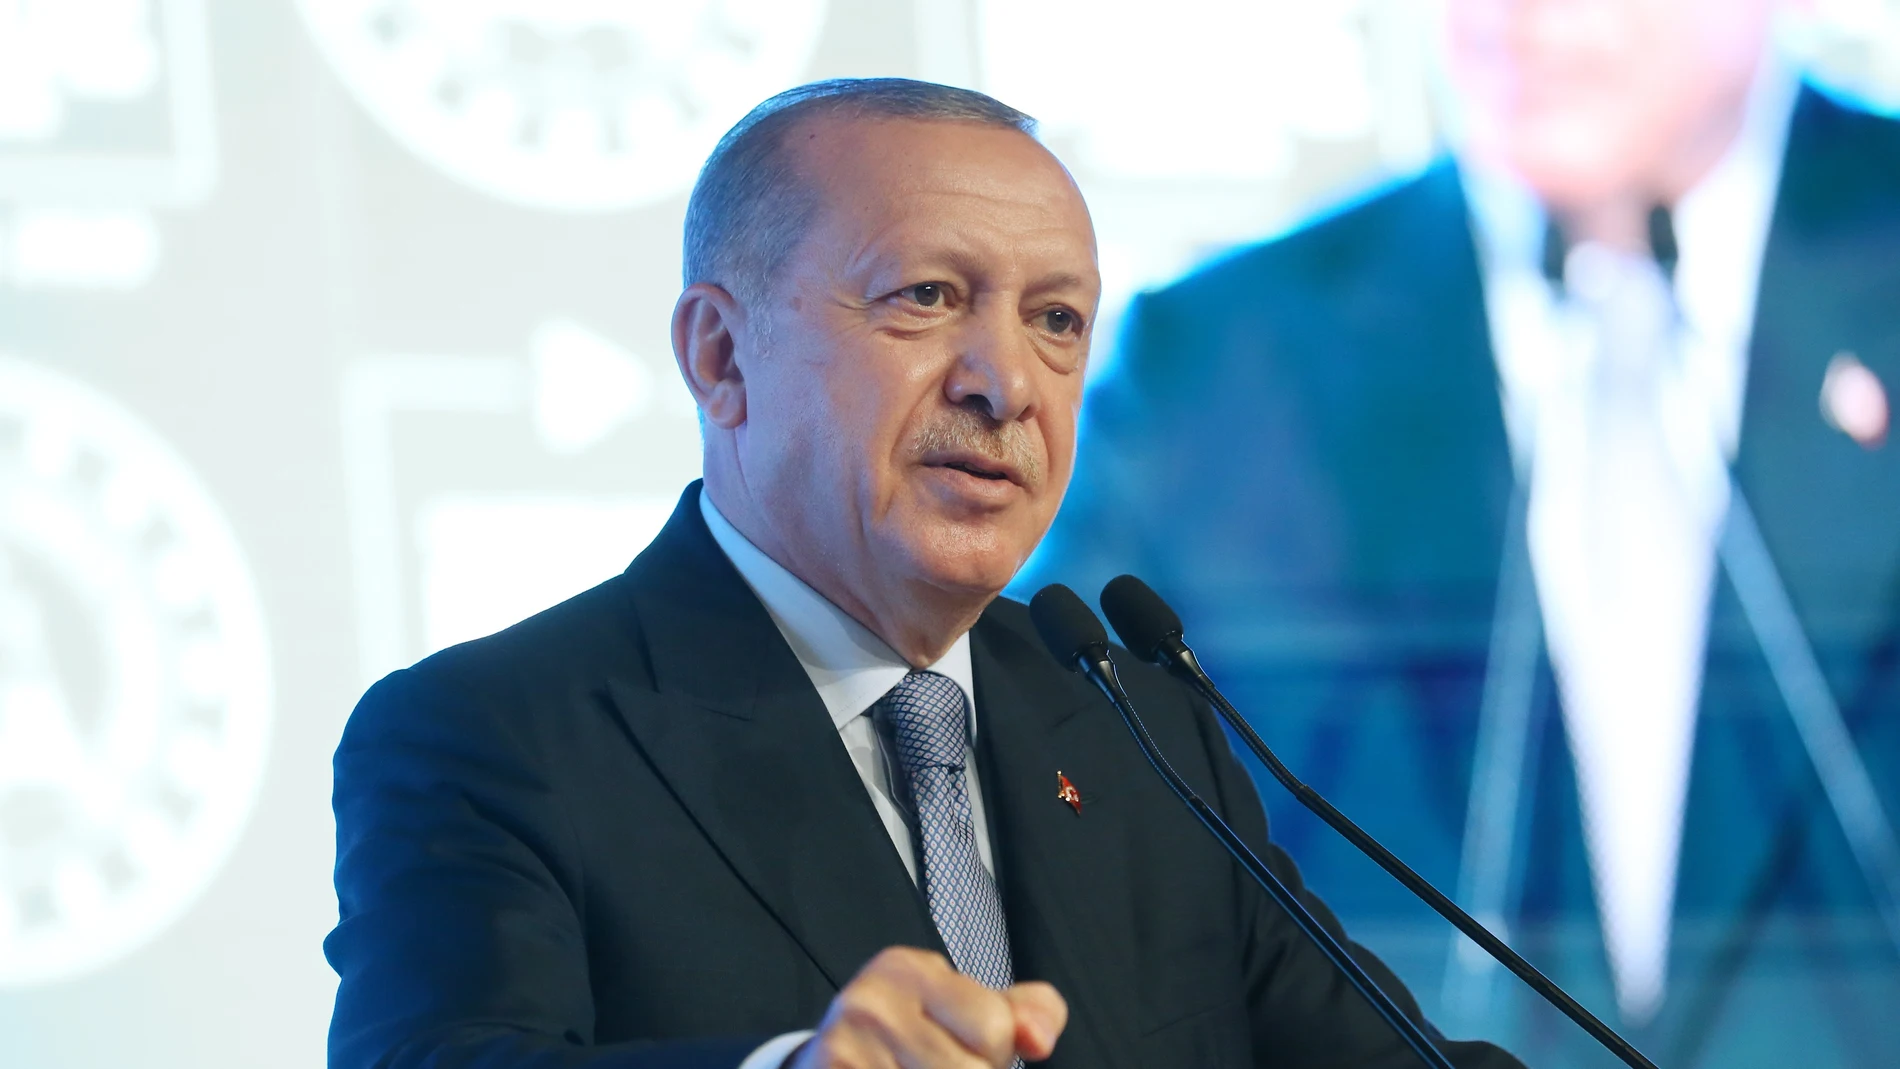 Turquía.- Erdogan dice a Macron que "tendrá muchos problemas" si sigue criticando a Turquía en relación al Mediterráneo